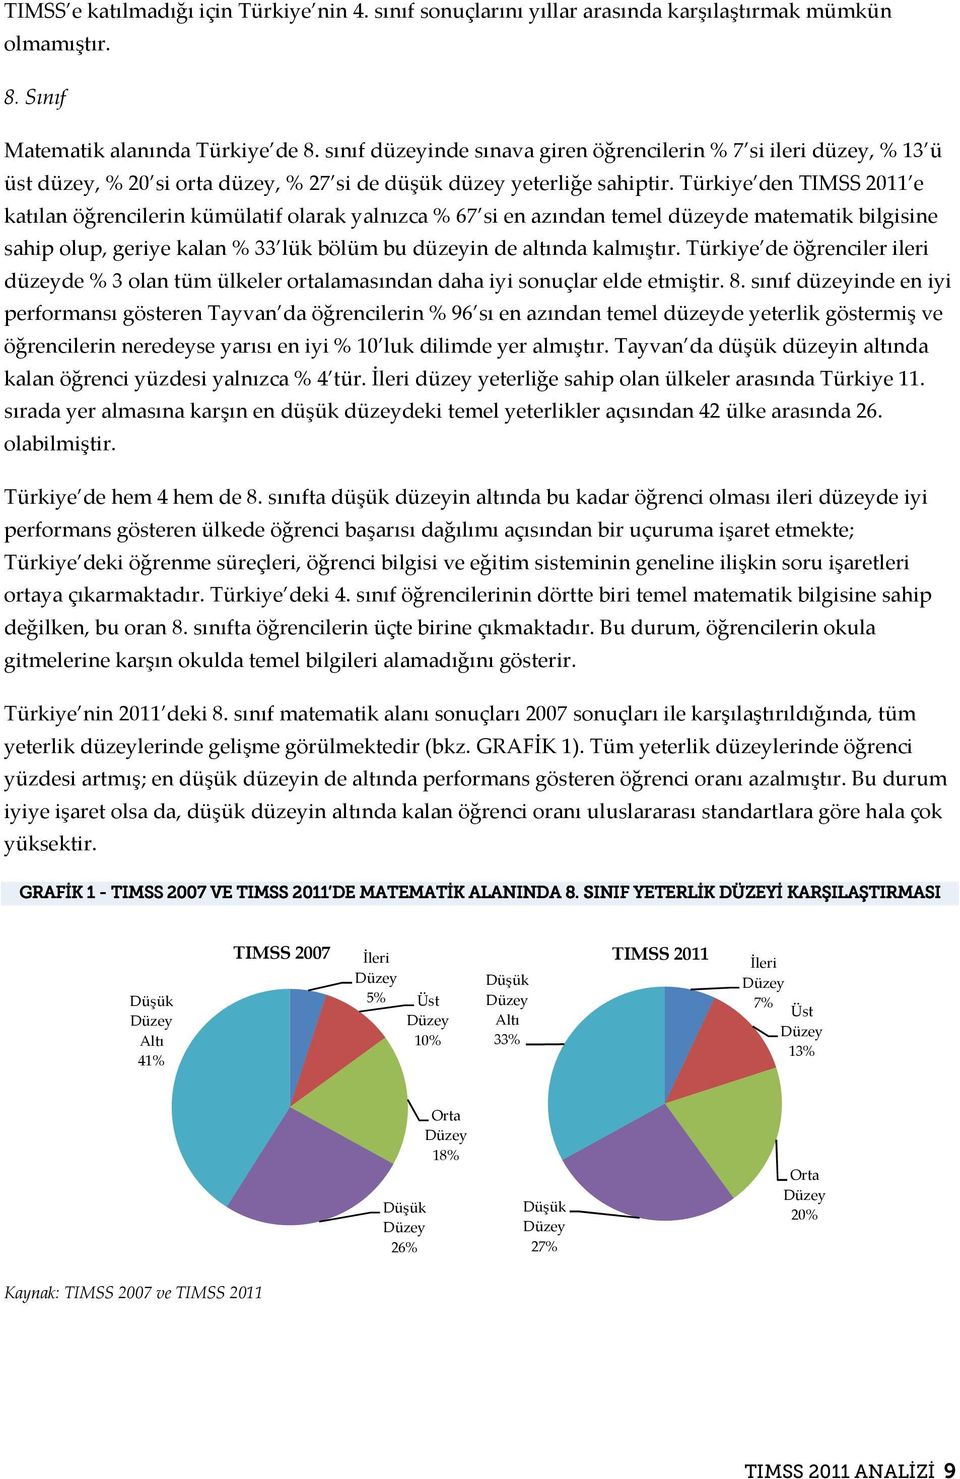 Türkiye den TIMSS 211 e katılan öğrencilerin kümülatif olarak yalnızca % 67 si en azından temel düzeyde matematik bilgisine sahip olup, geriye kalan % 33 lük bölüm bu düzeyin de altında kalmıştır.